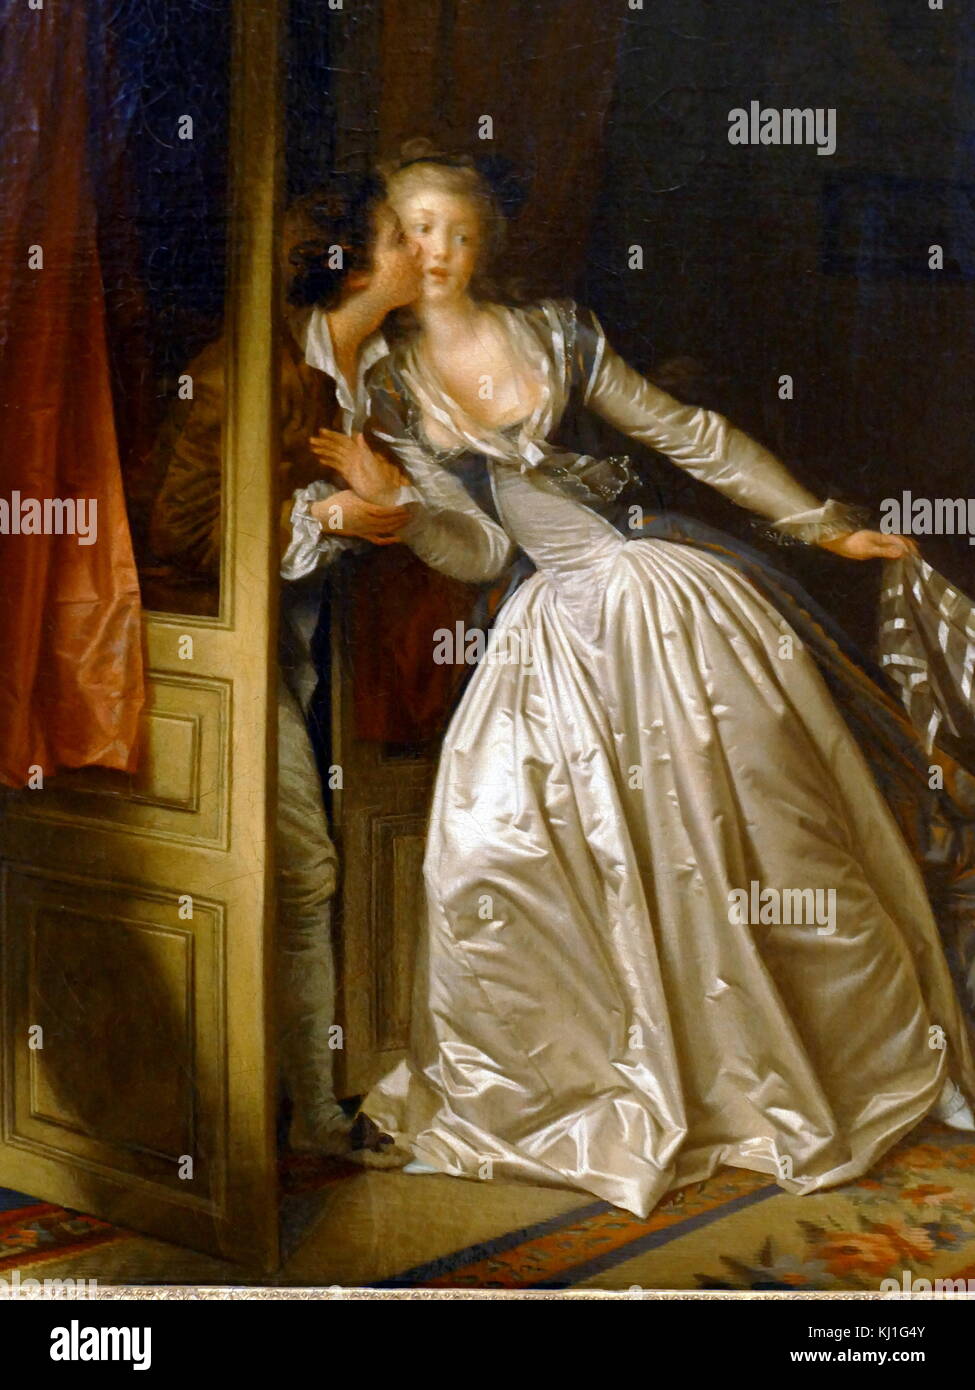 Le Baiser volé par Jean Honoré Fragonard. Fragonard (1732 - 1806) était un peintre et graveur français de la fin de manière Rococo Banque D'Images